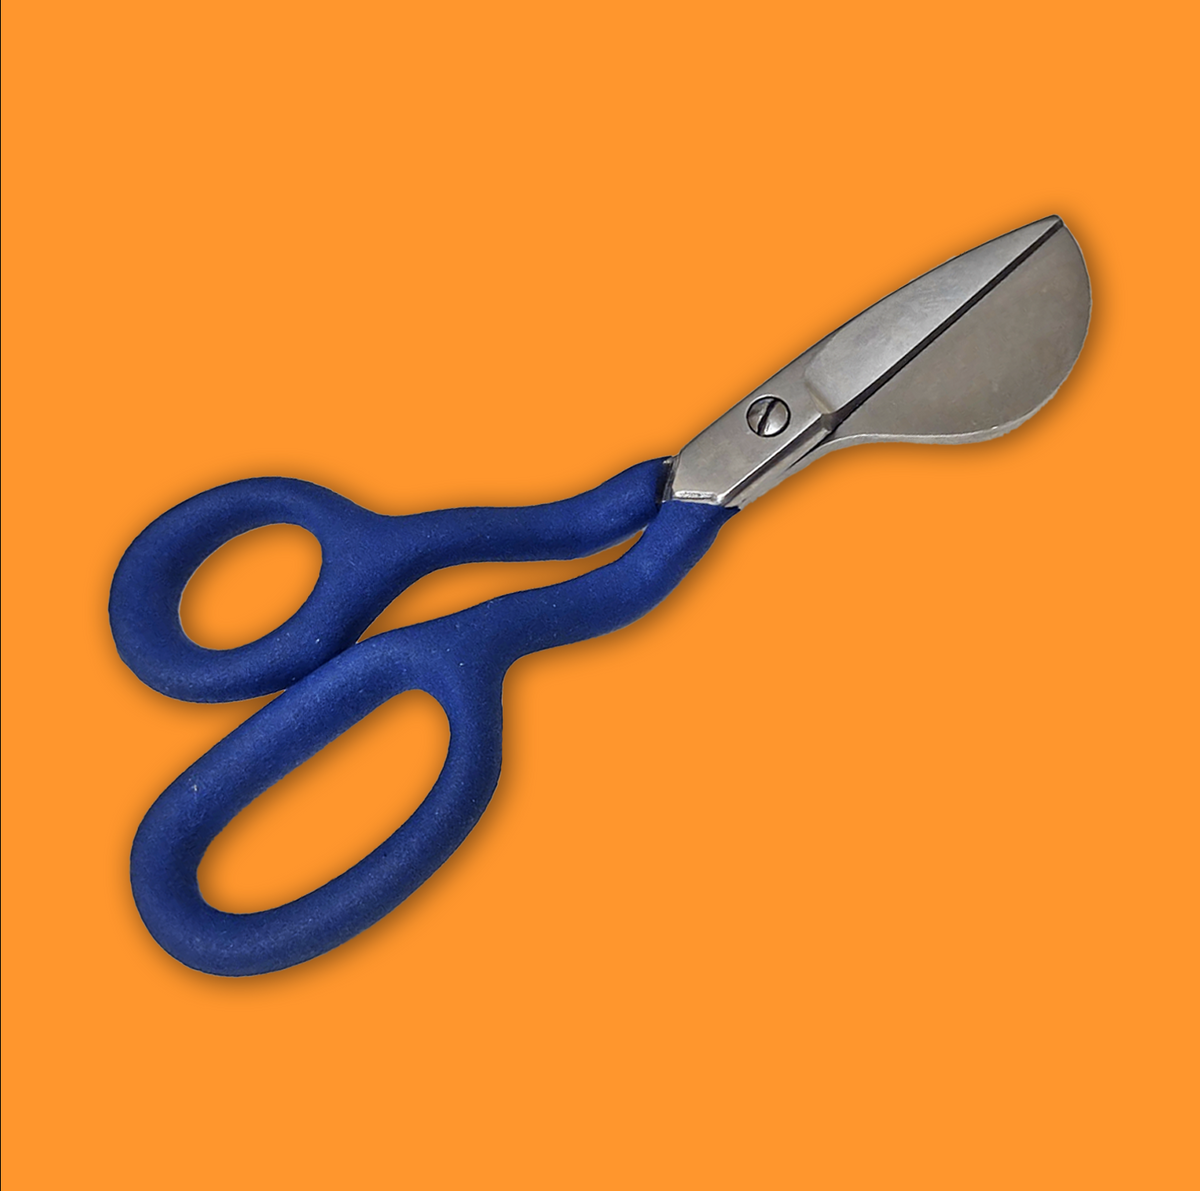 Duckbill scissors – Tufting